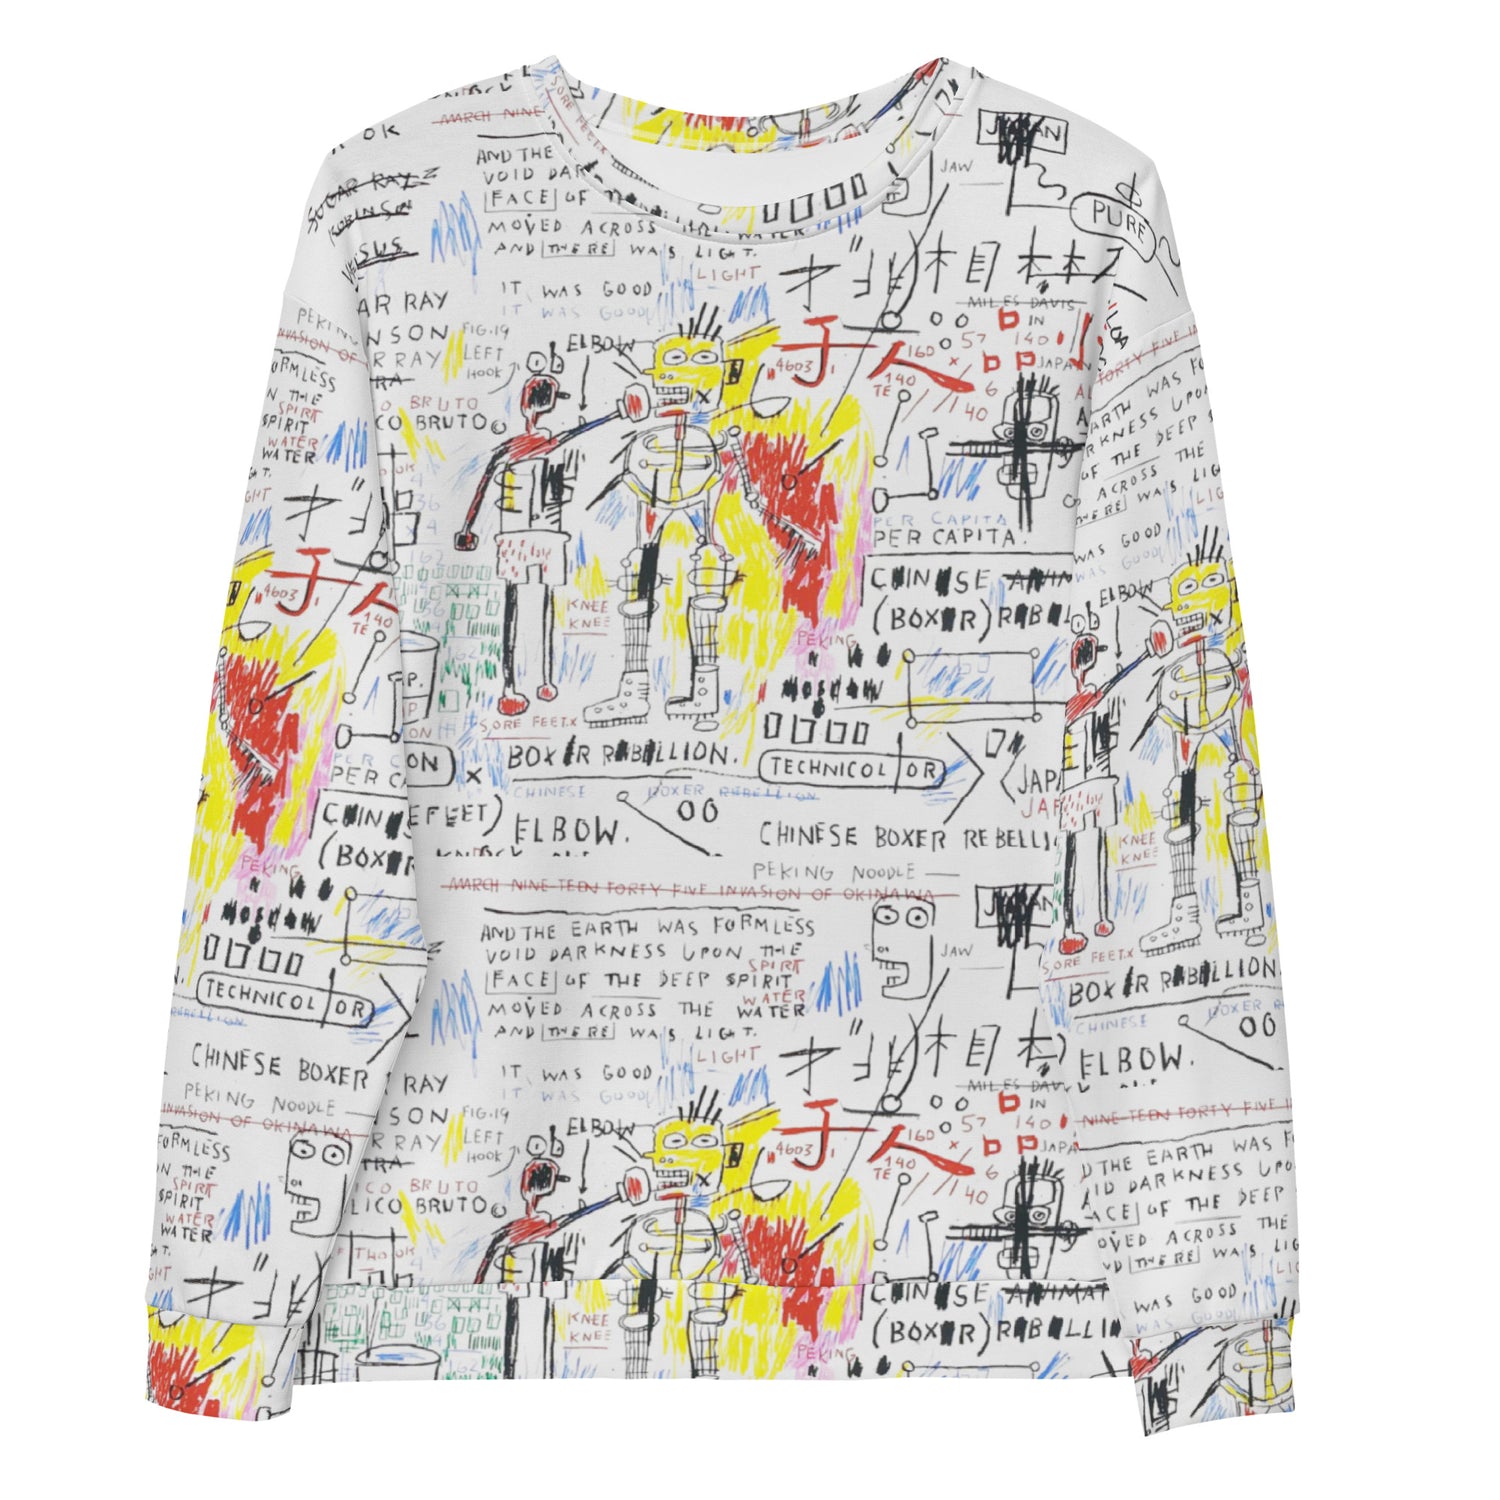 Jean-Michel Basquiat "Boxer Rebellion" Artwork Printed Premium Streetwear Crewneck Sweatshirt Harajuku Graffiti